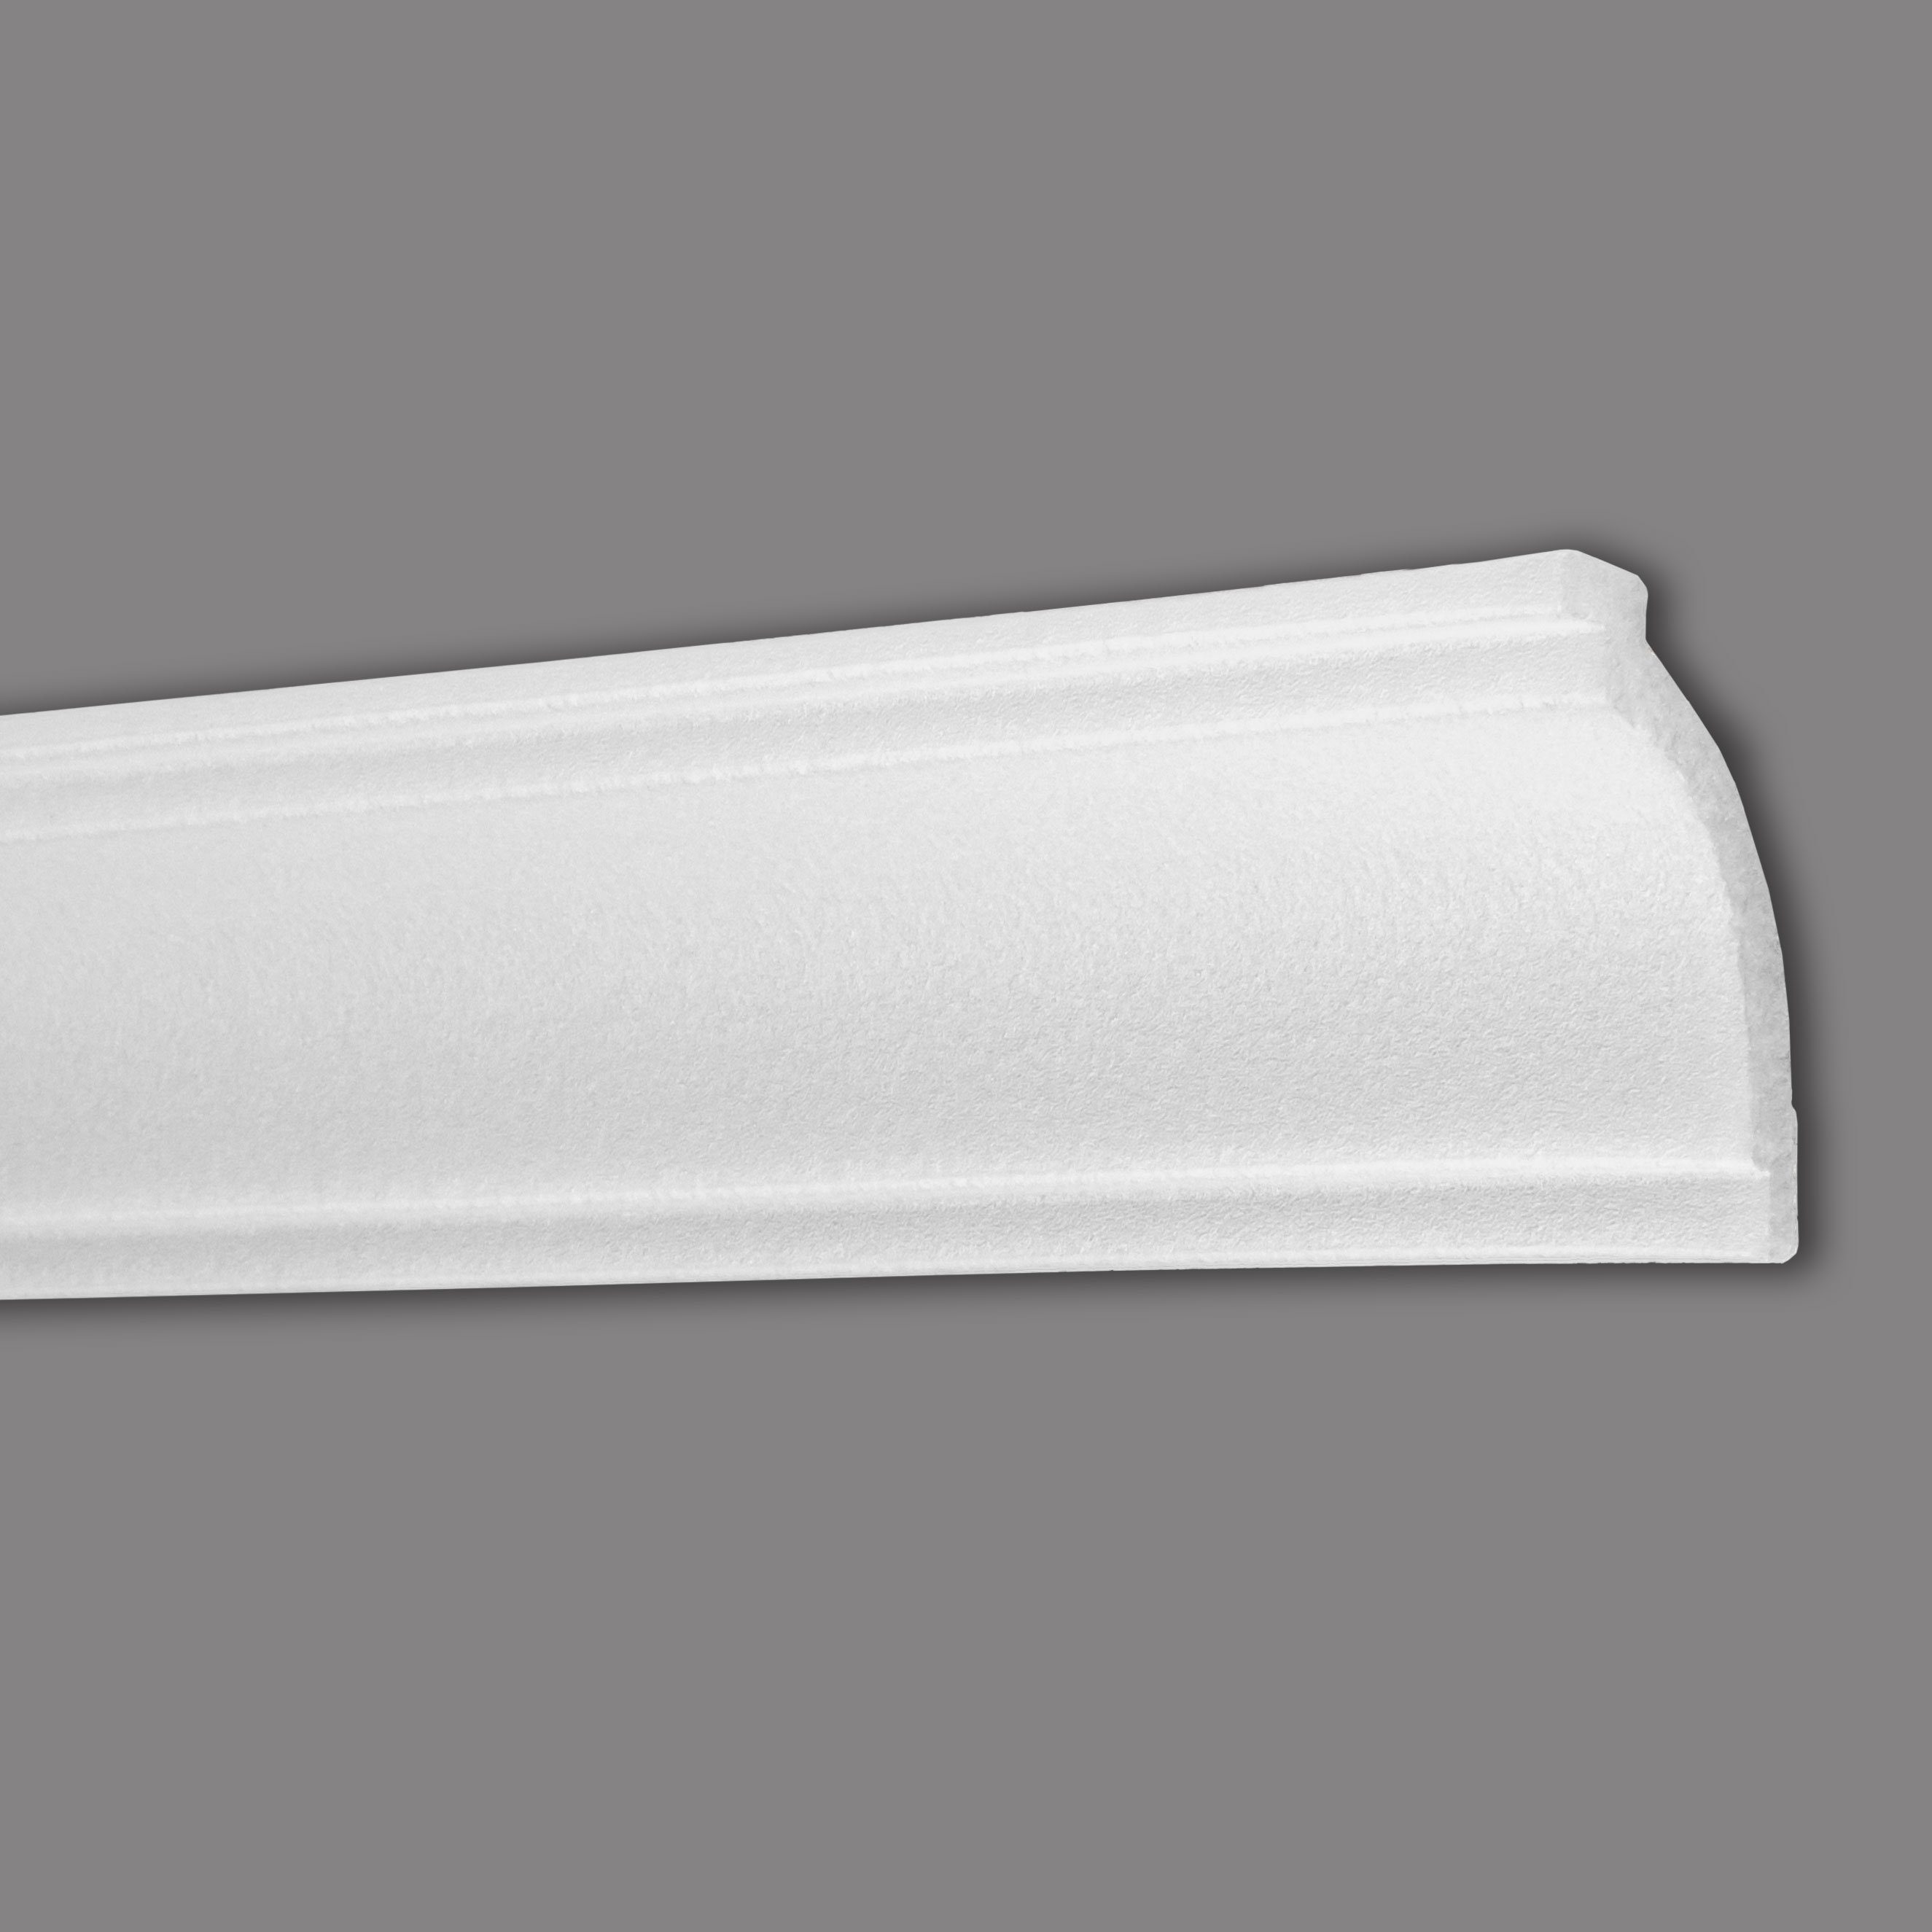 PROVISTON Stuckleiste Polystyrol, 55 x 68 x 2000 mm, Weiß, Deckenleiste